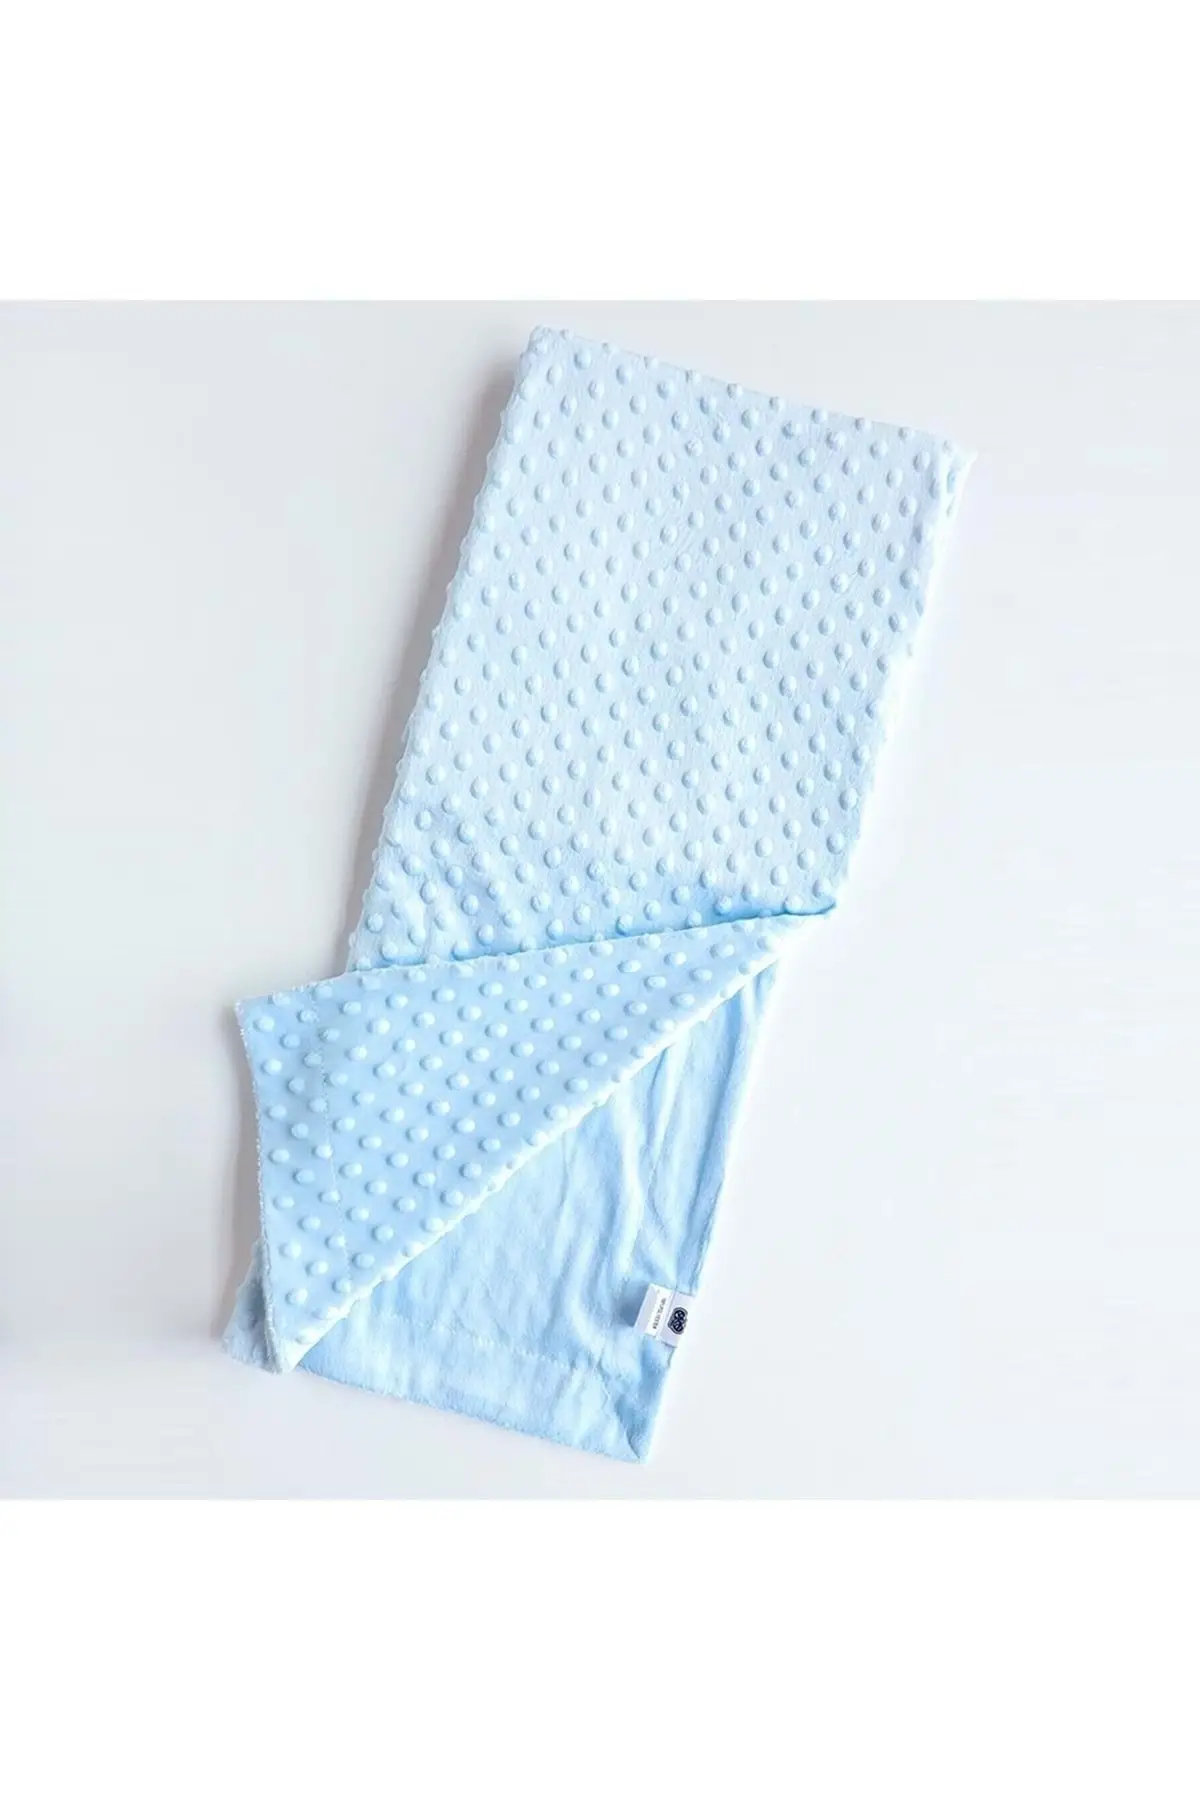 

Boy-girl Baby Chickpeas Blanket-Blanket Blue Newborn Cotton 80x90 Baby & Kids Home Textile Textile & Furniture